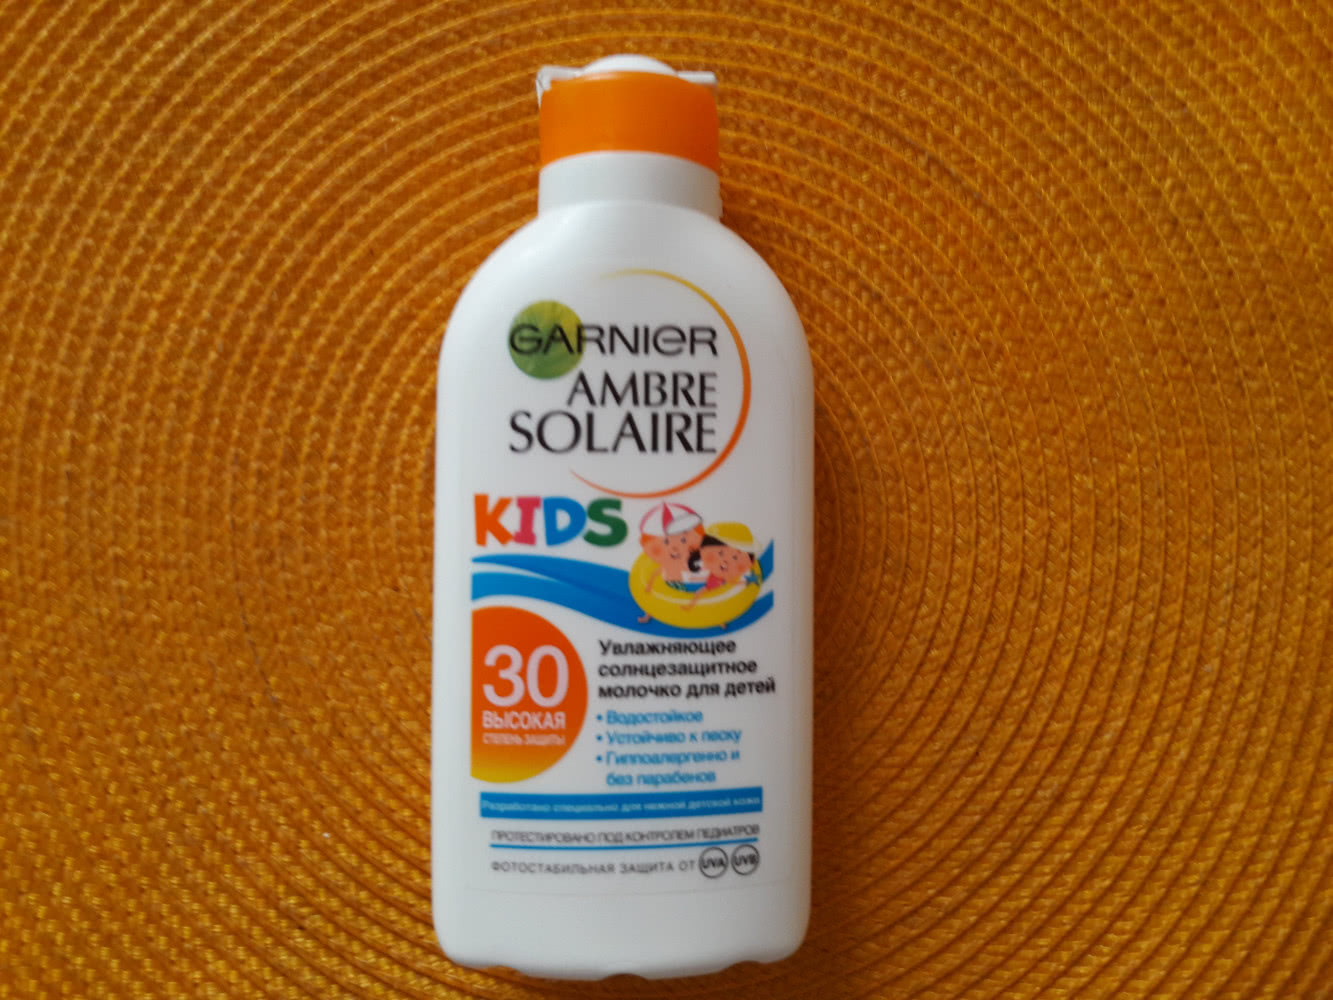 Garnier Ambre Solaire Увлажняющее солнцезащитное молочко для детей SPF 30